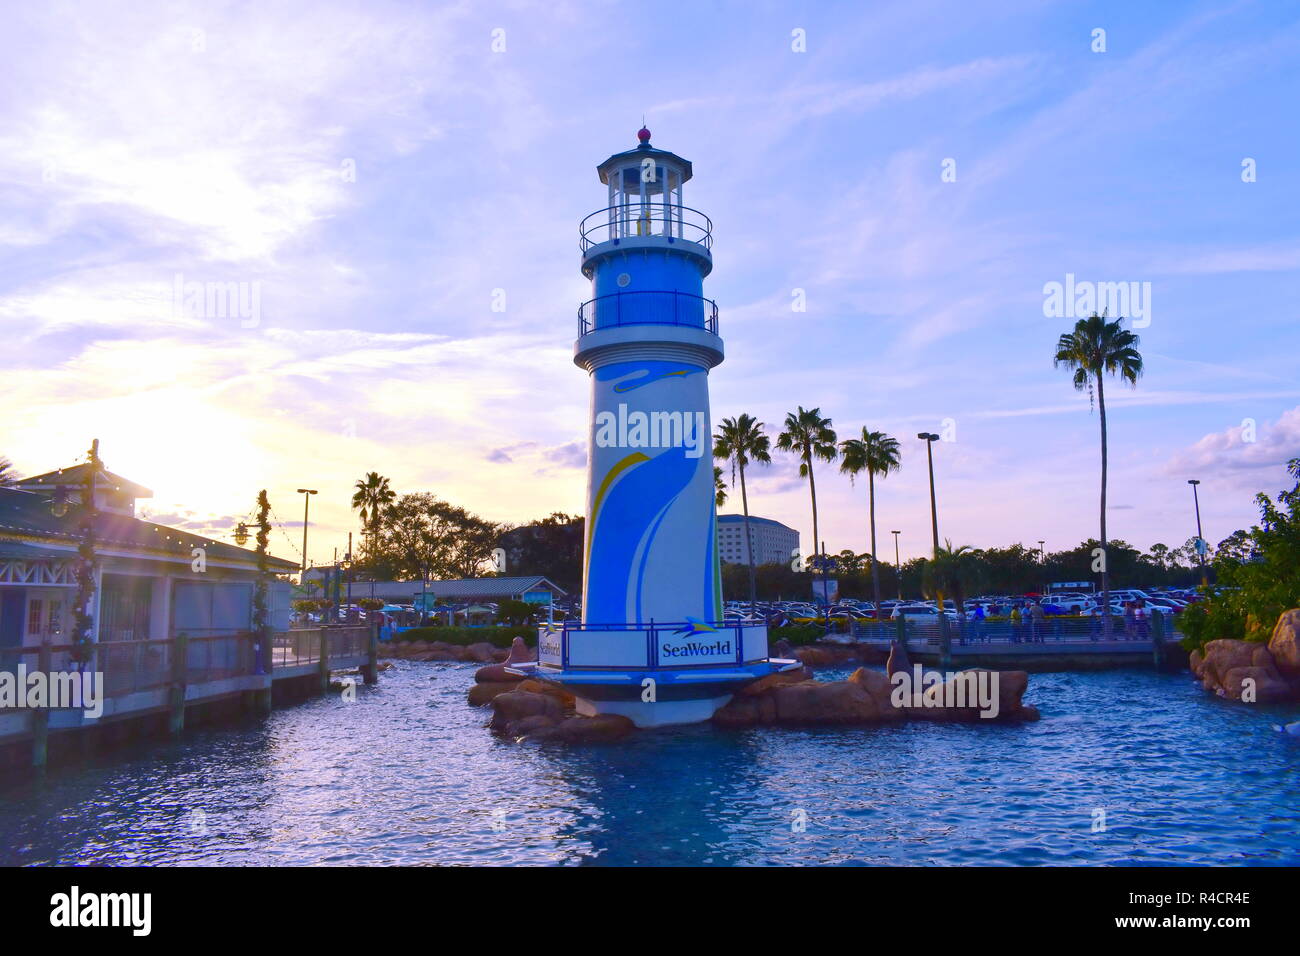 Orlando, Florida. November 19, 2018. Seaworld lighthouse on sunset background in International Drive area. Stock Photo